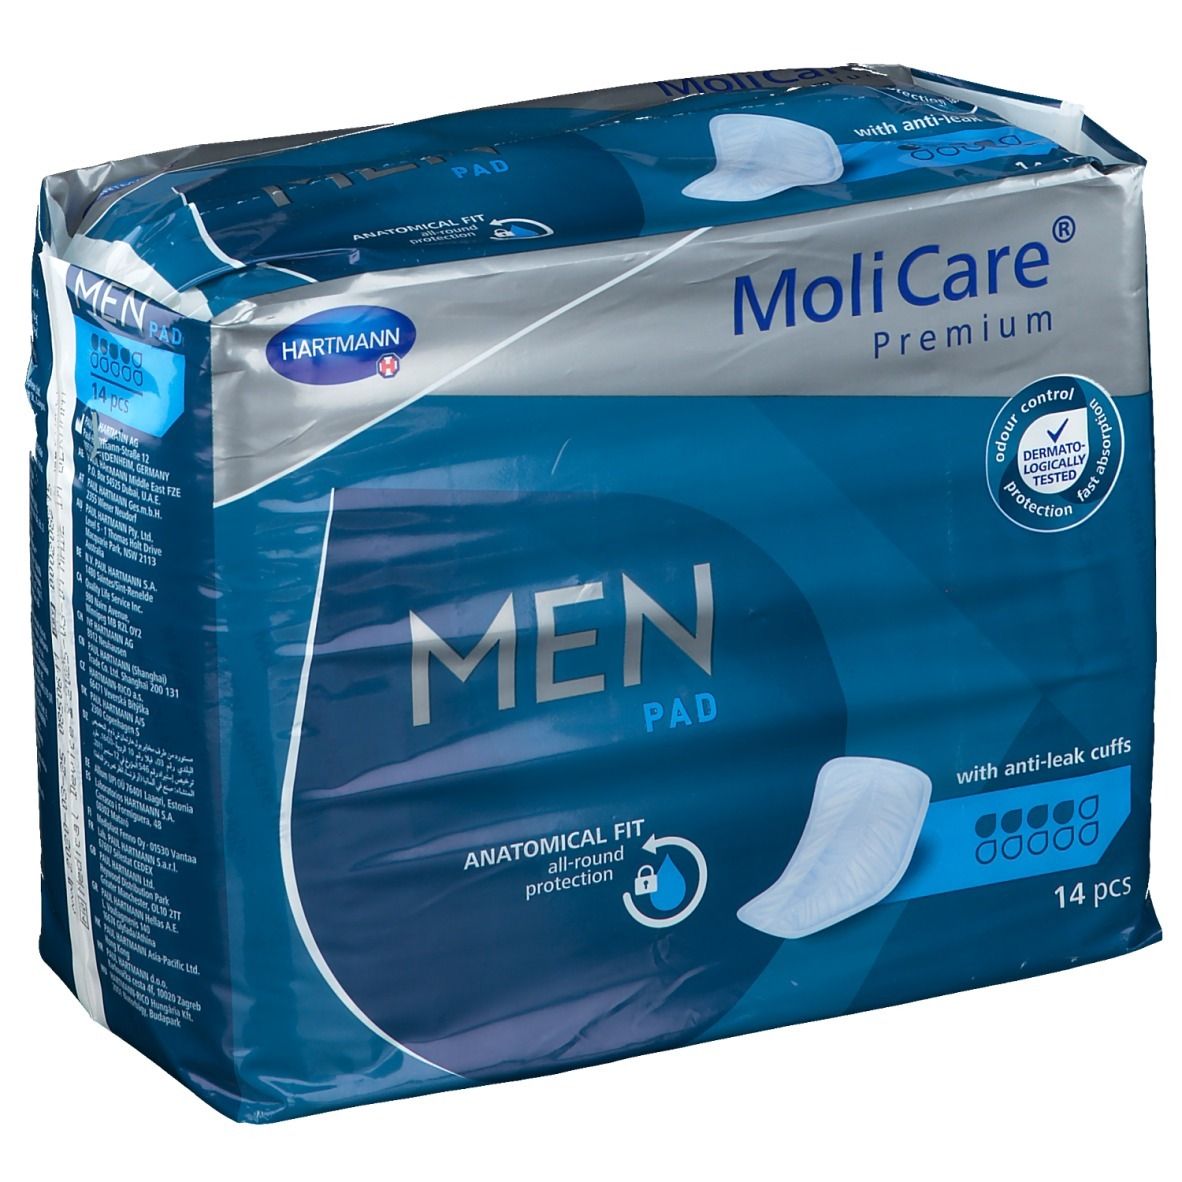 Image of MoliCare® Premium MEN pad 4